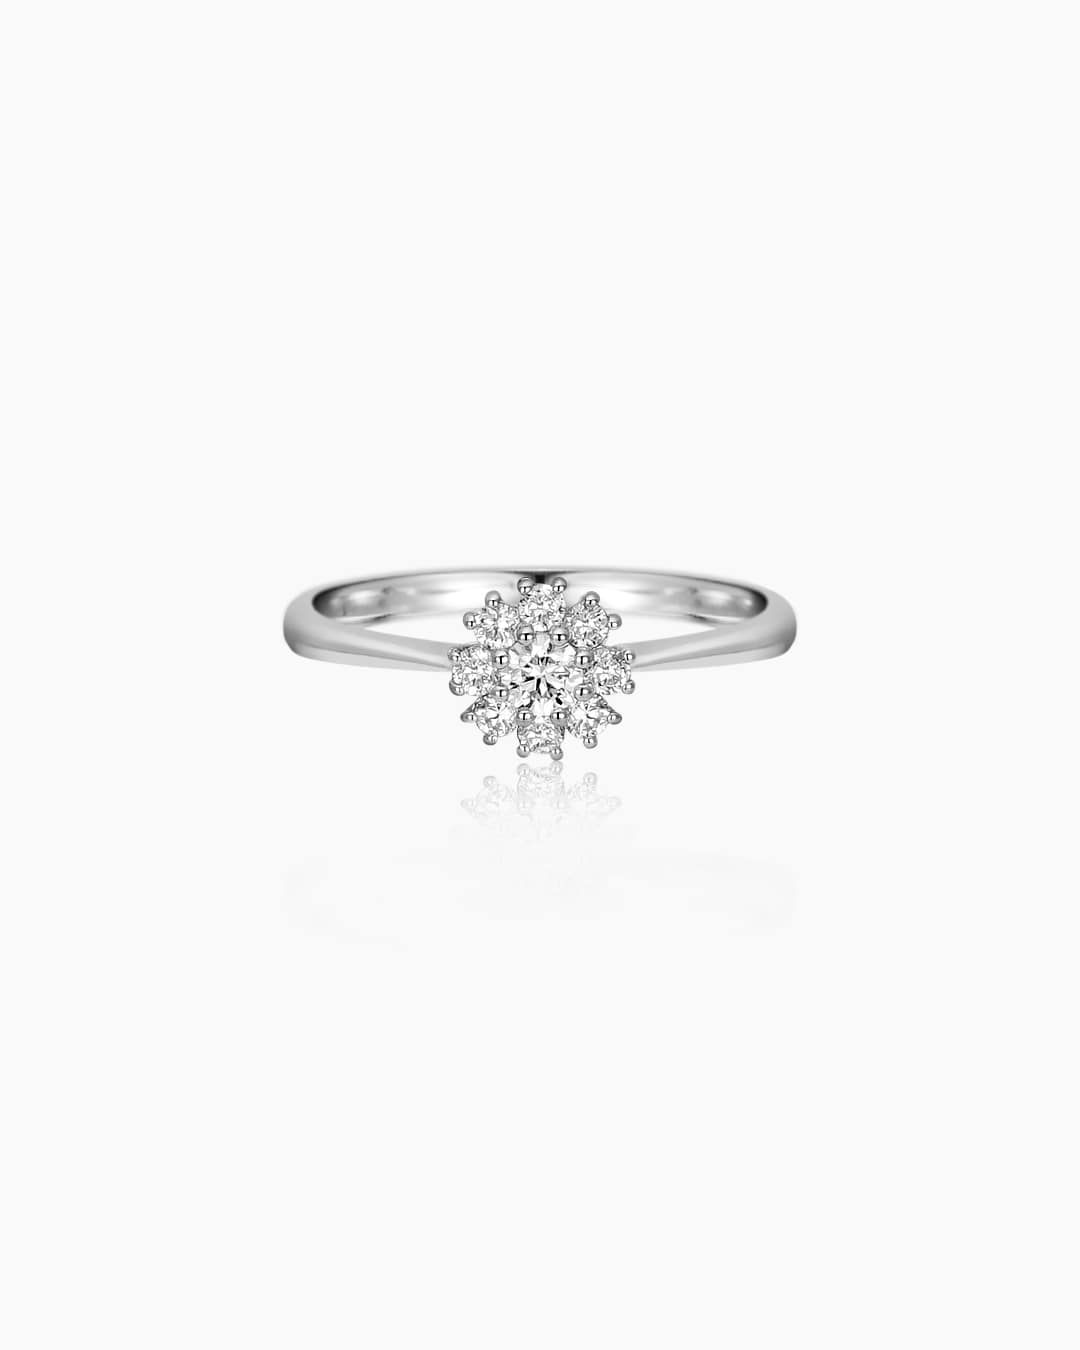 랩다이아몬드가 세팅된 반지이다.